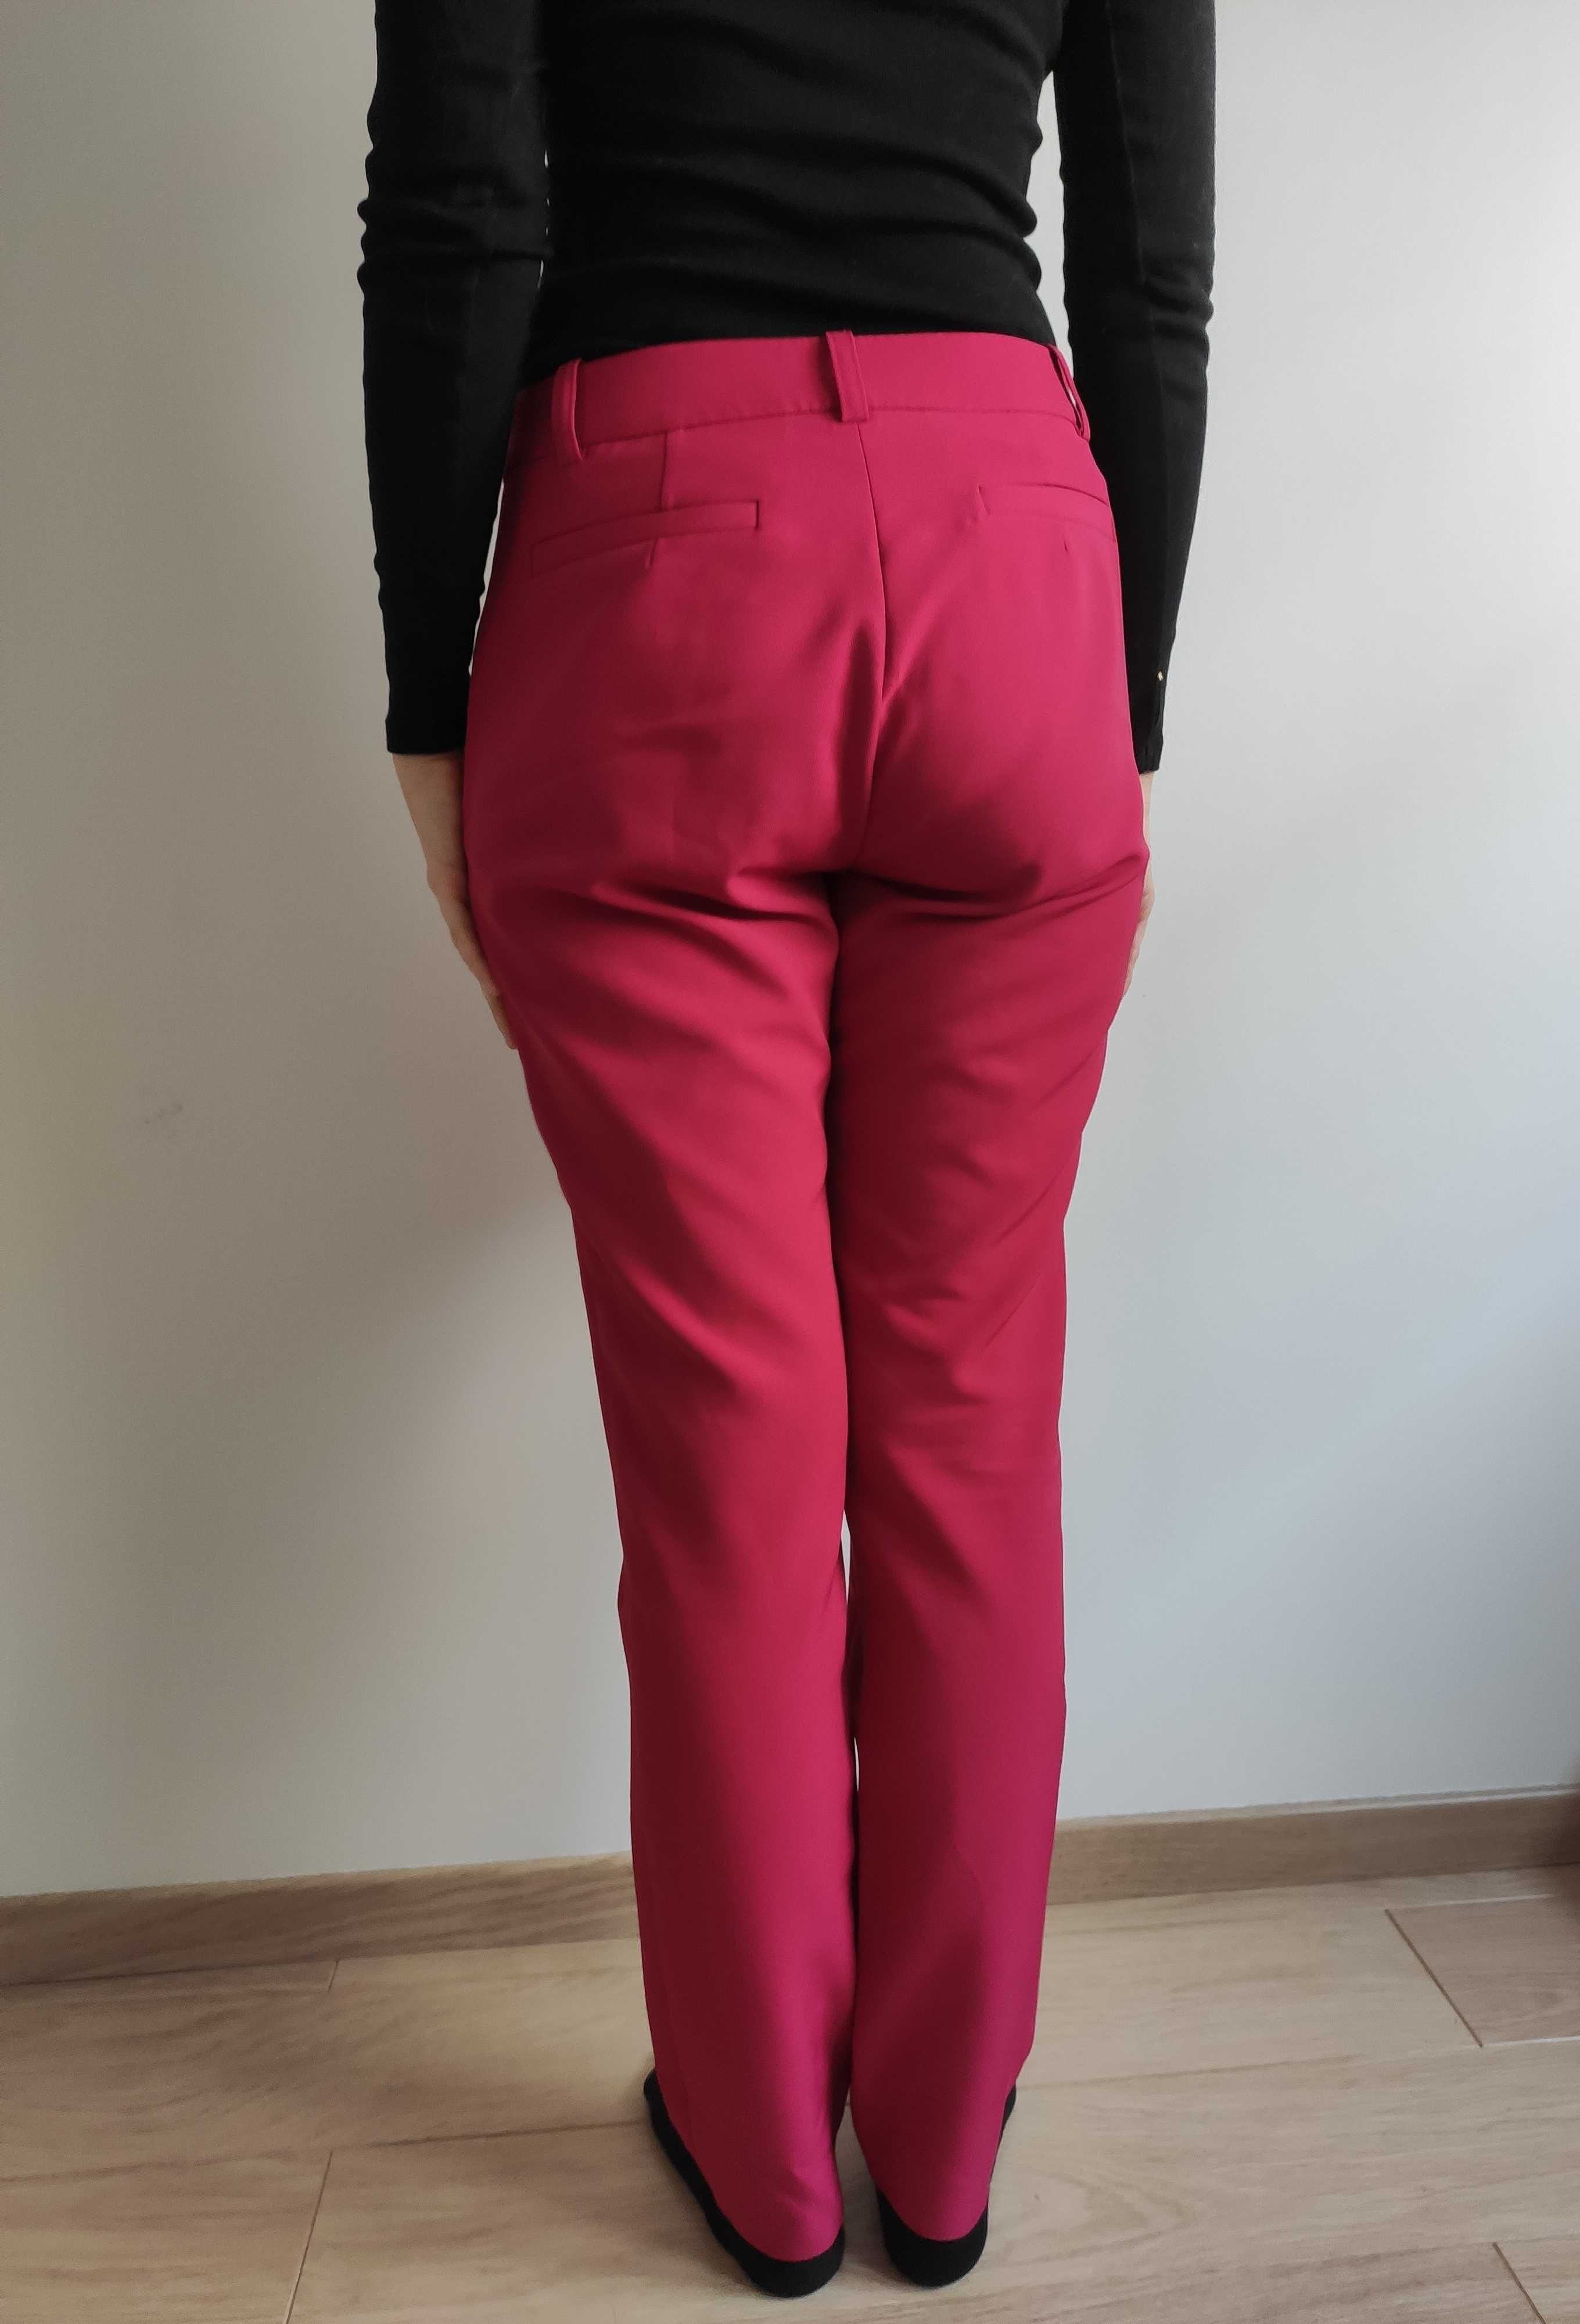 Materiałowe malinowe/różowe spodnie Monnari 36